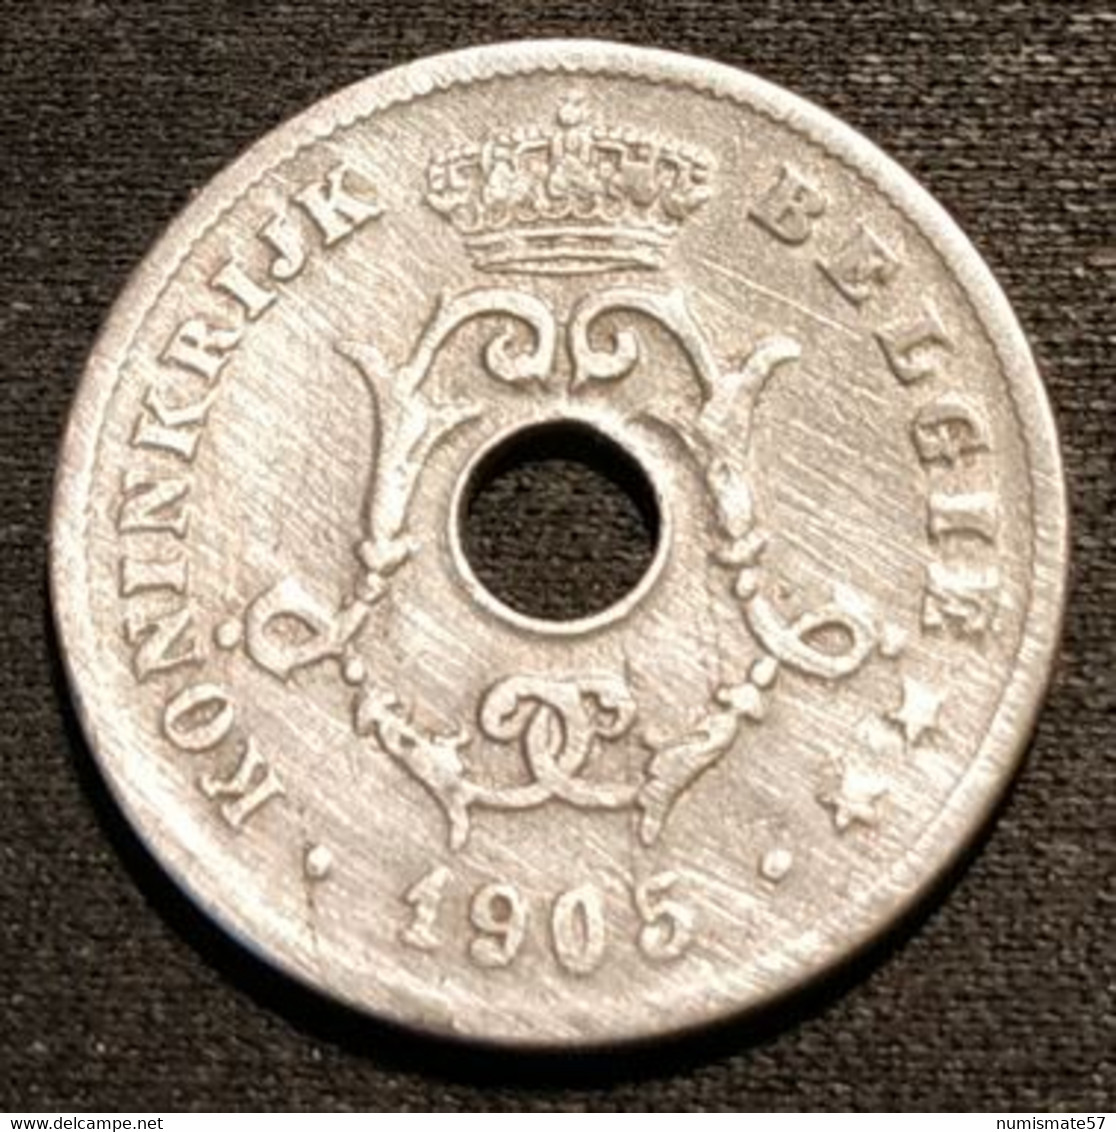 BELGIQUE - BELGIUM - 10 CENTIMES 1905 - Légende NL - Léopold II - Type Michaux - KM 53 - 10 Cent